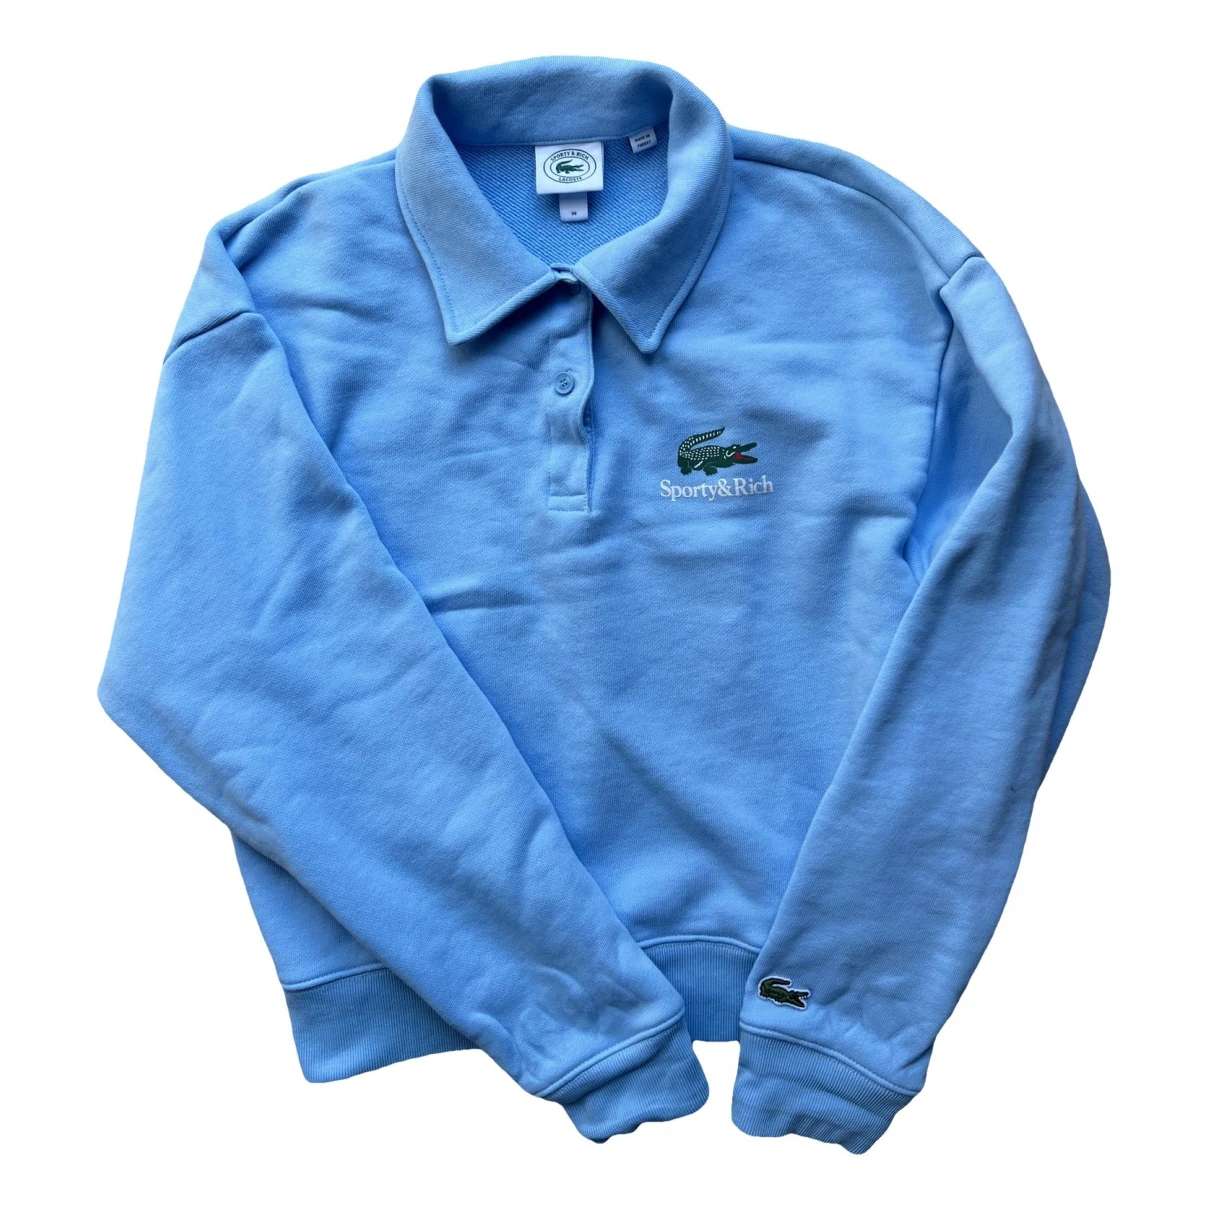 Pre-owned Lacoste Sweatshirt In Blue